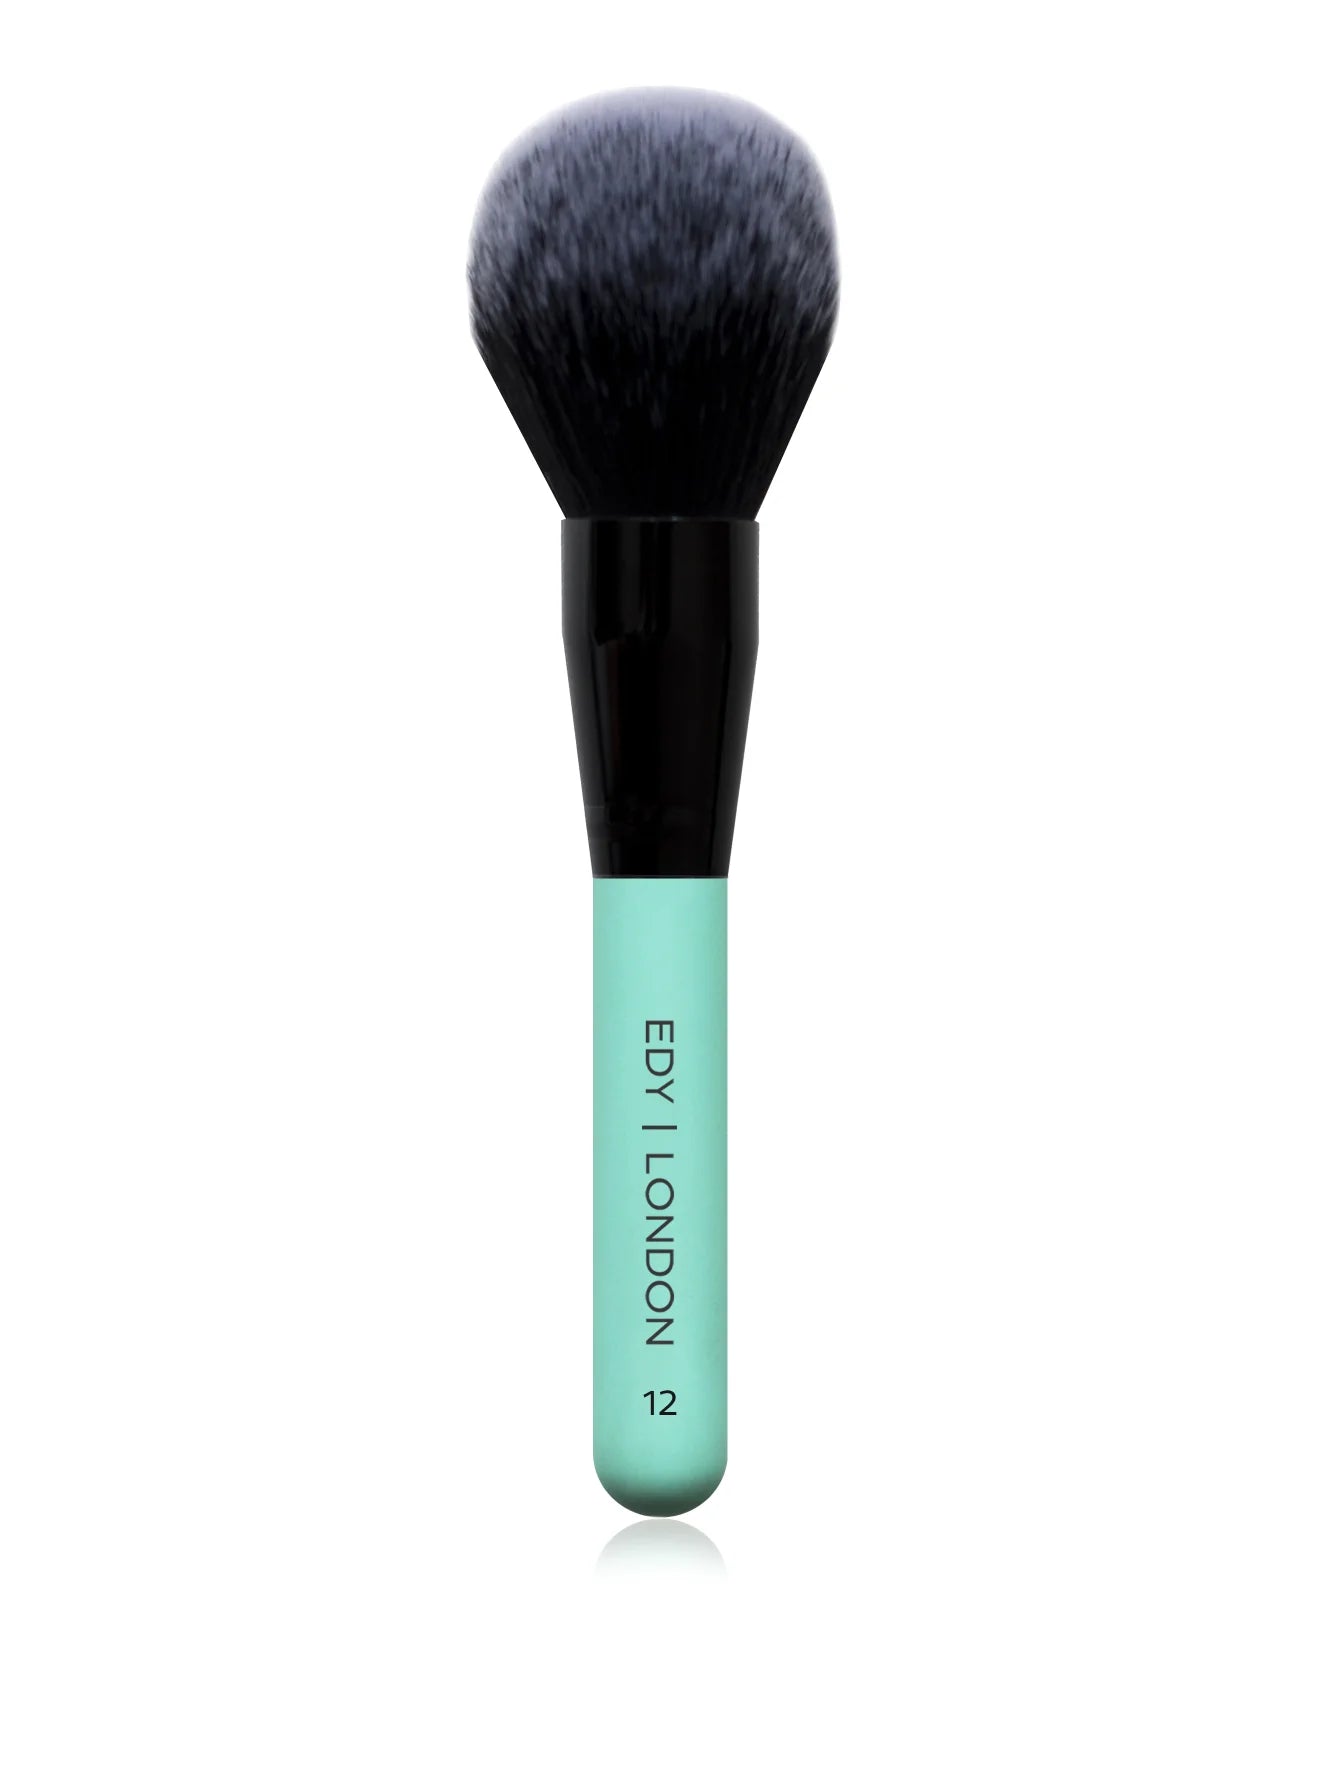 Powder Brush 12 Make-up Brush EDY LONDON Turquoise   - EDY LONDON PRODUCTS UK - The Best Makeup Brushes - shop.edy.london